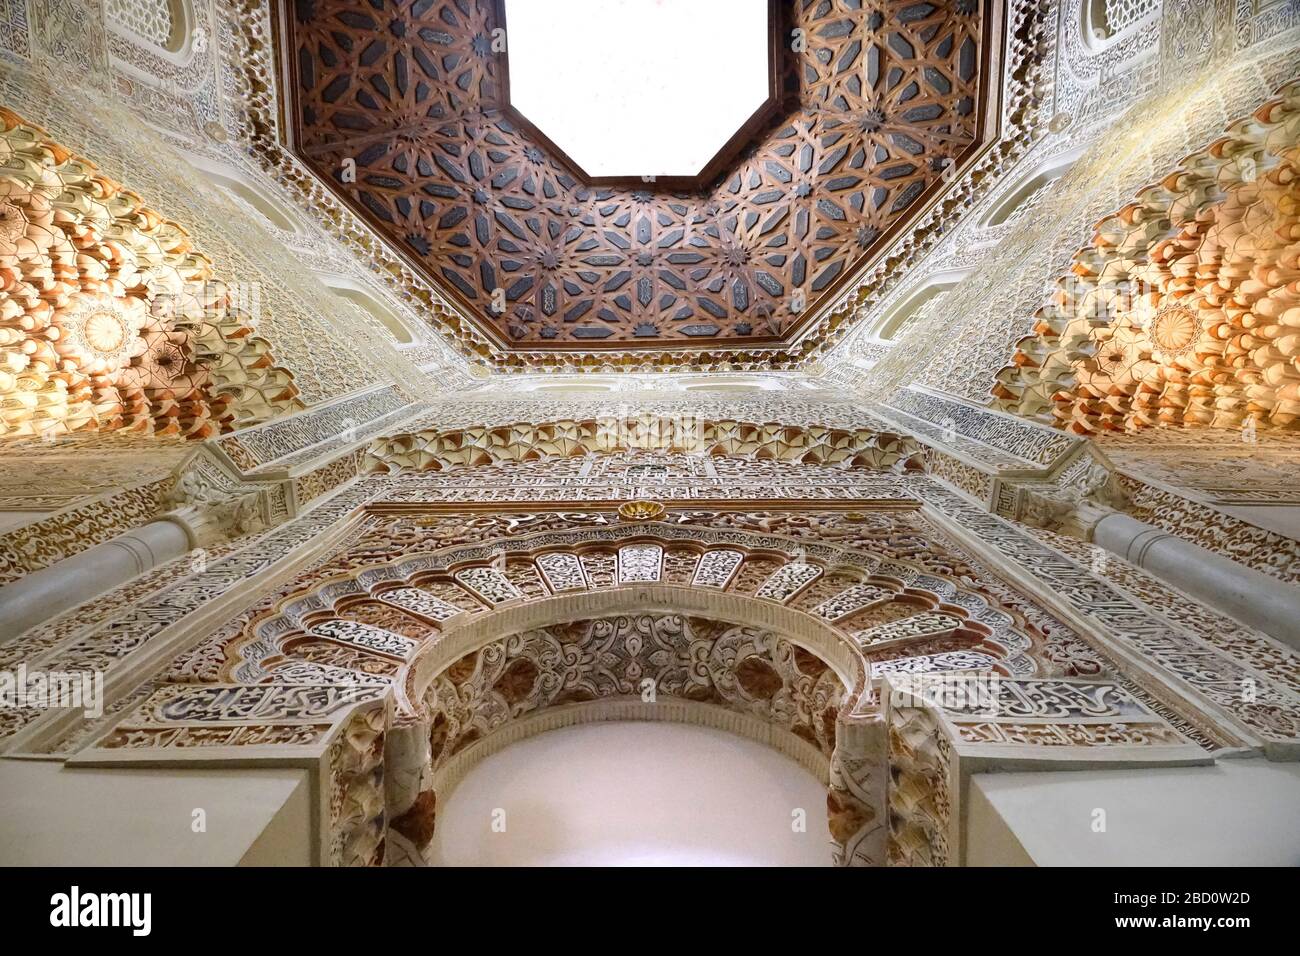 Spanien, Andalusien, Granada, Palacio de la Madraza, Universitätsgebäude, innen, ehemaliger Gebetsraum mit maurischen Fresken Stock Photo